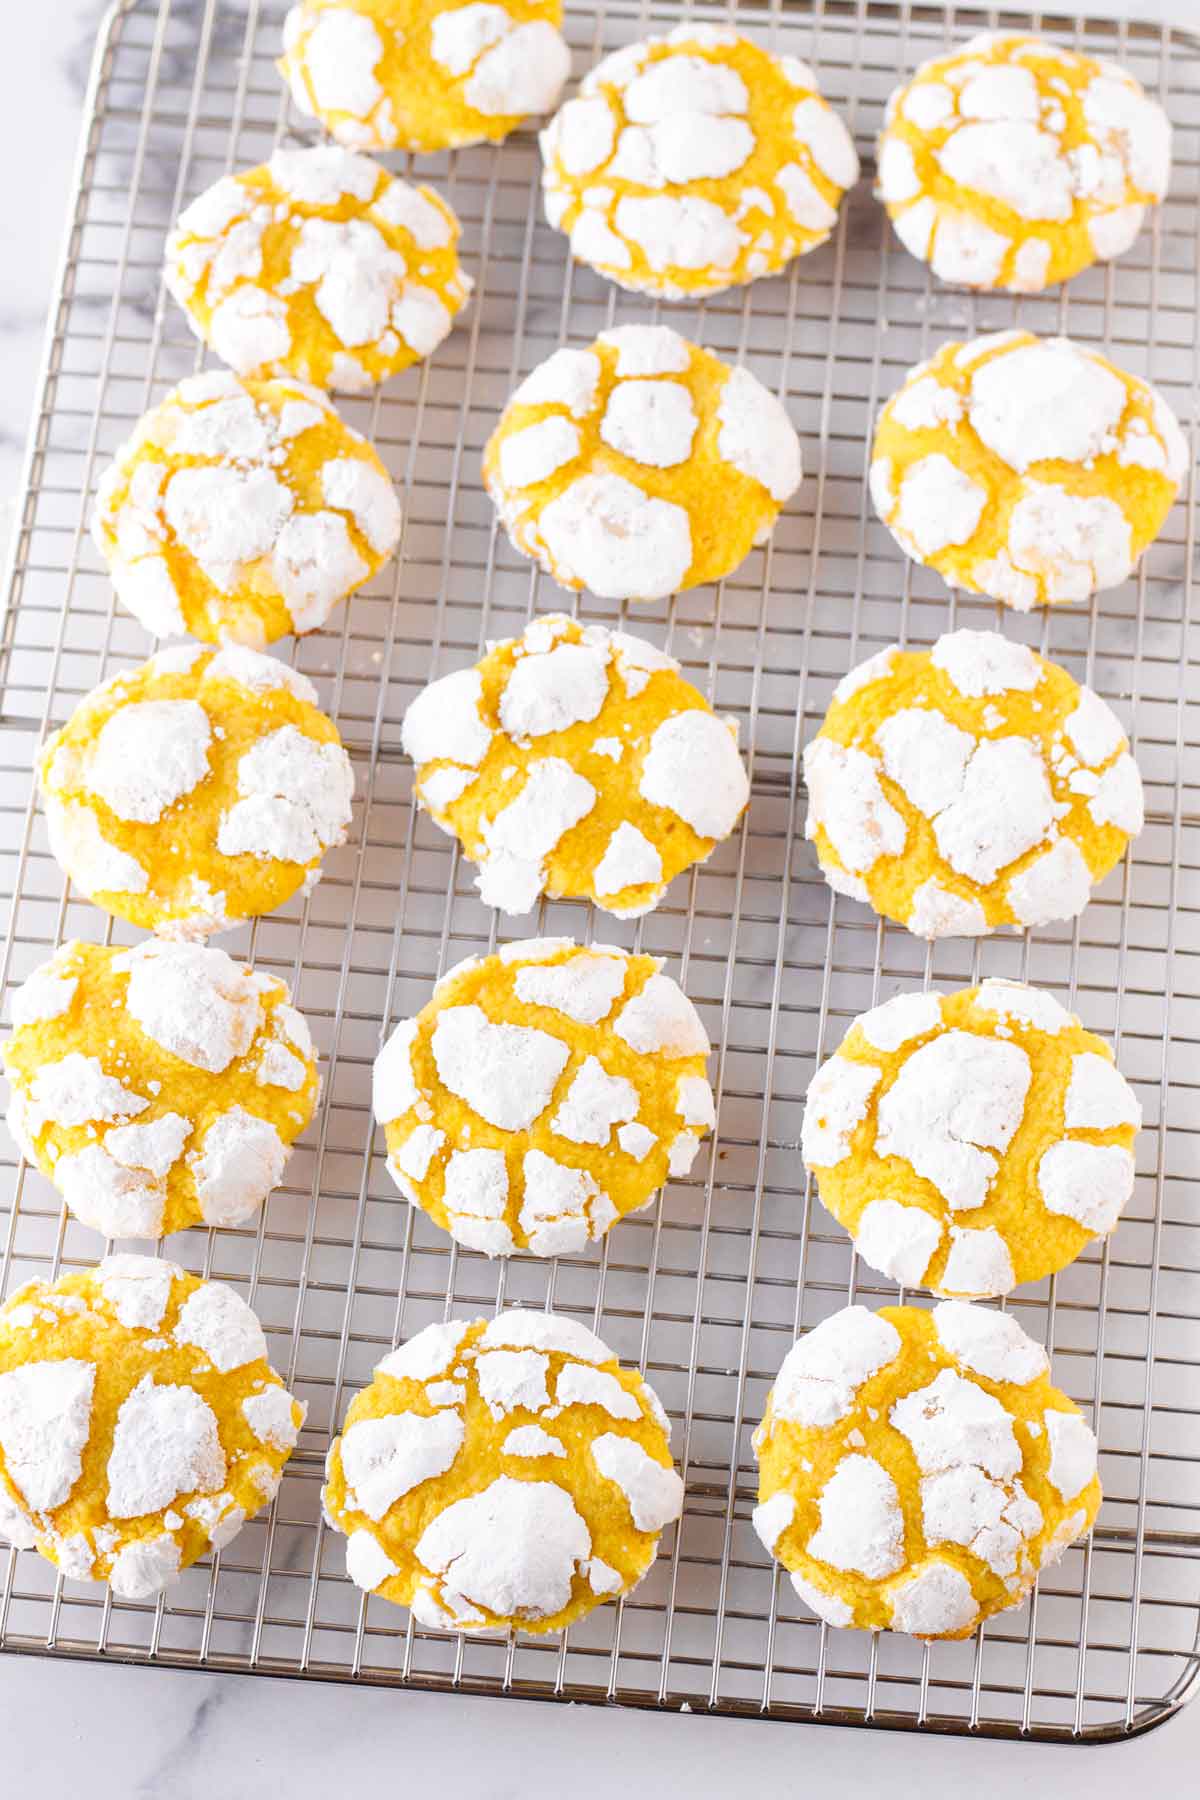 baked lemon crinkle cookies with powdered sugar on cooking rack